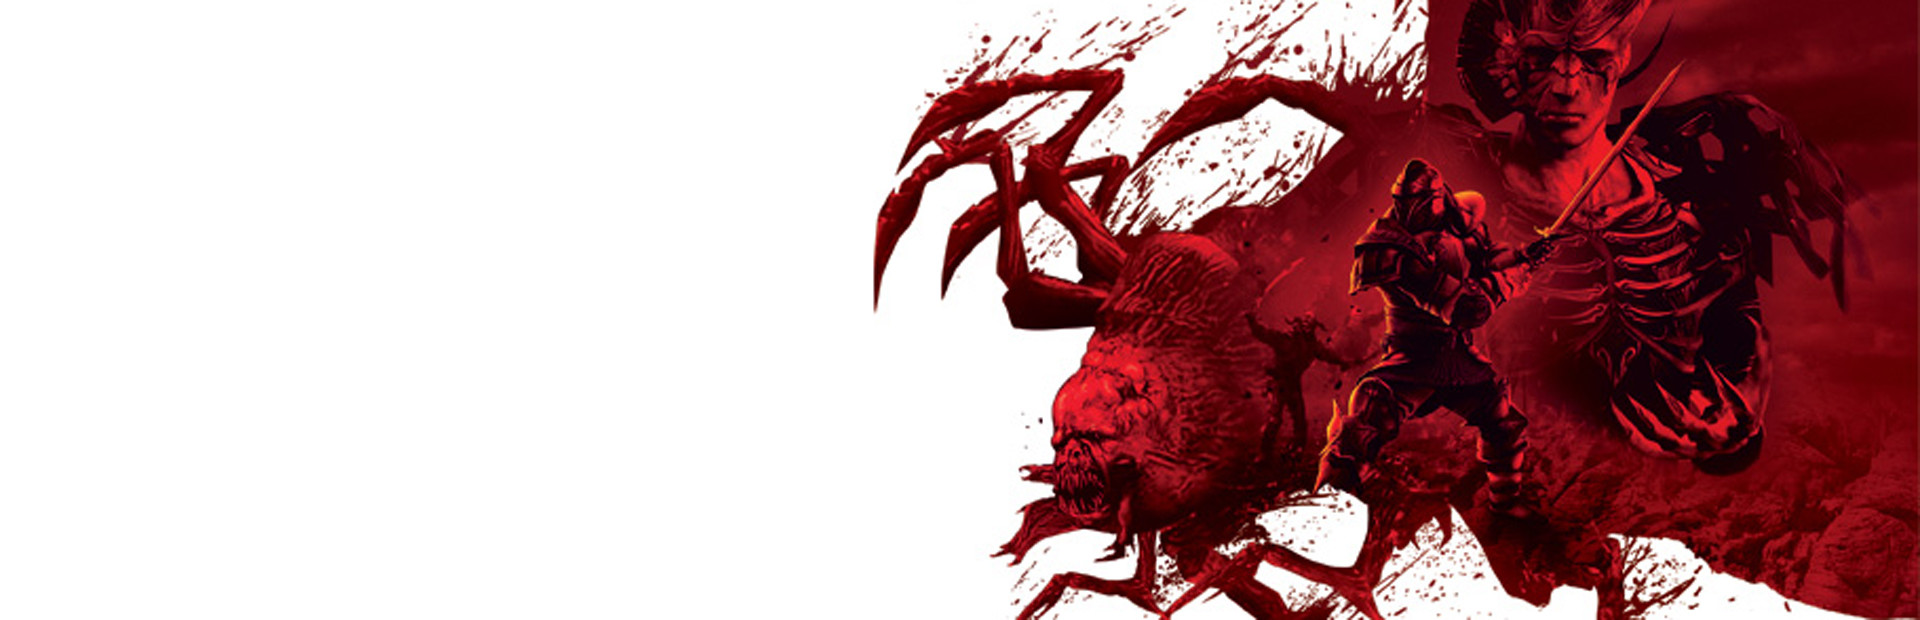 Dragon Age™: Origins Awakening cover image